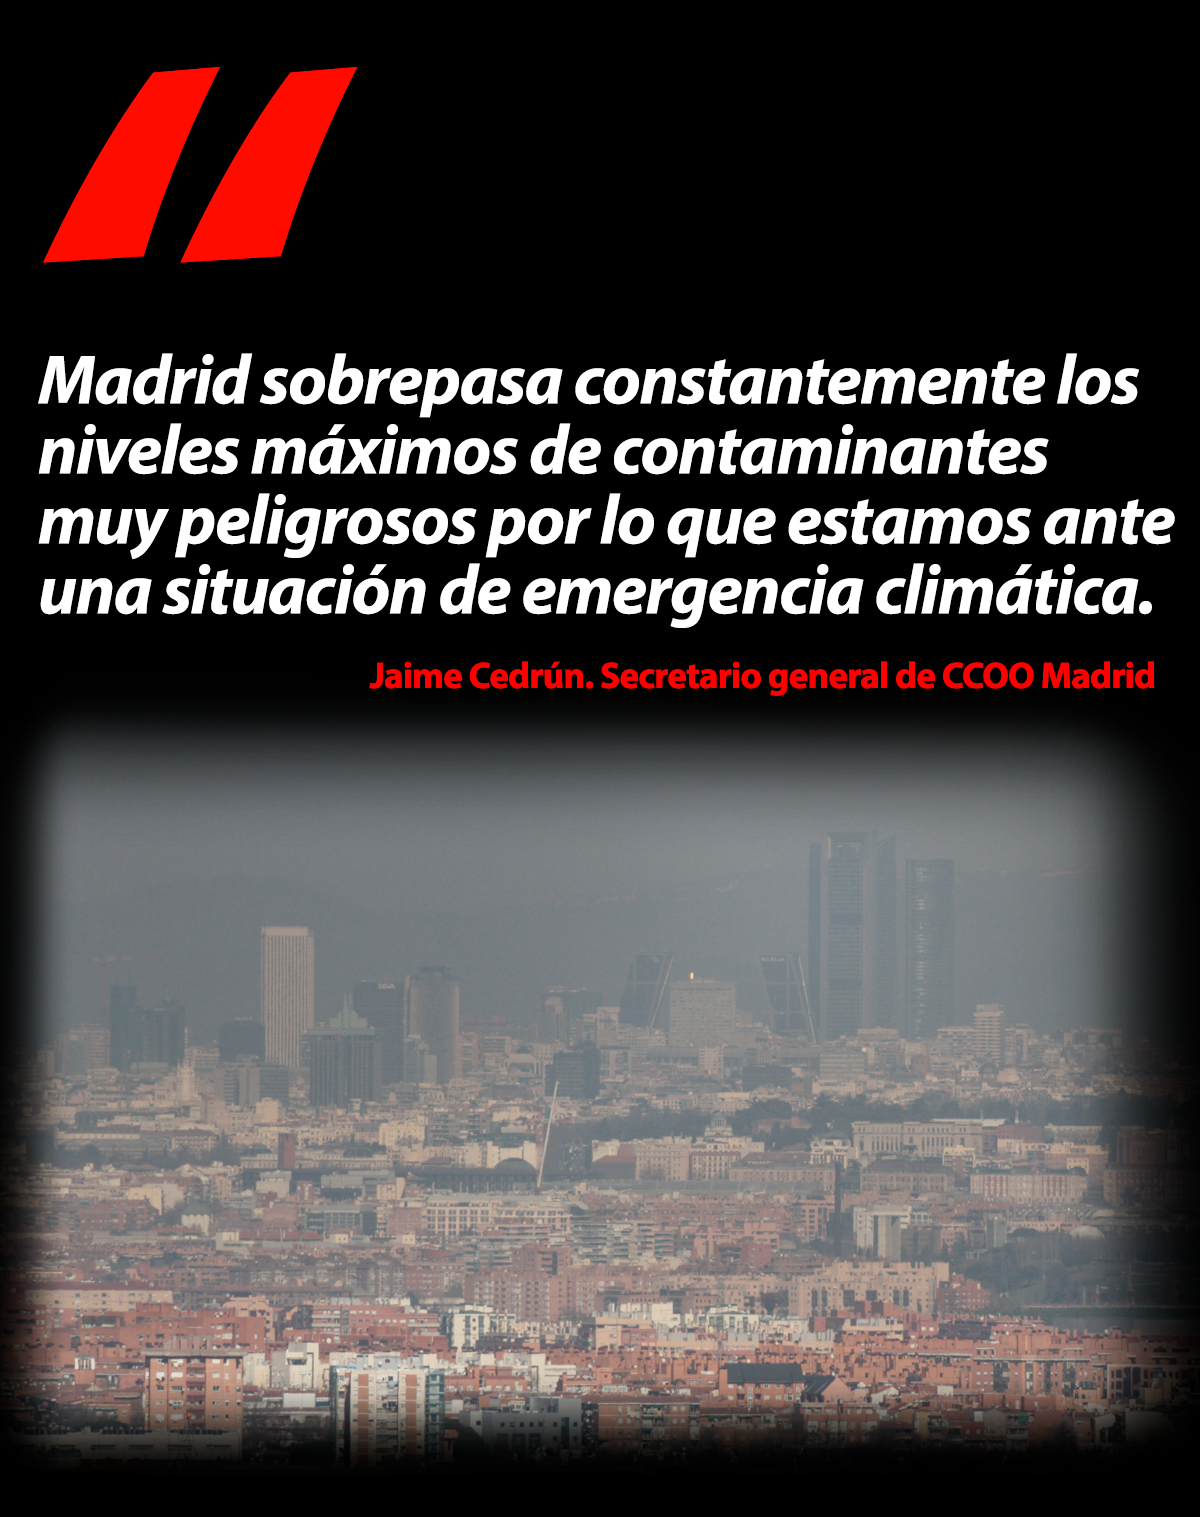 Madrid en estado de emergencia clim�tica